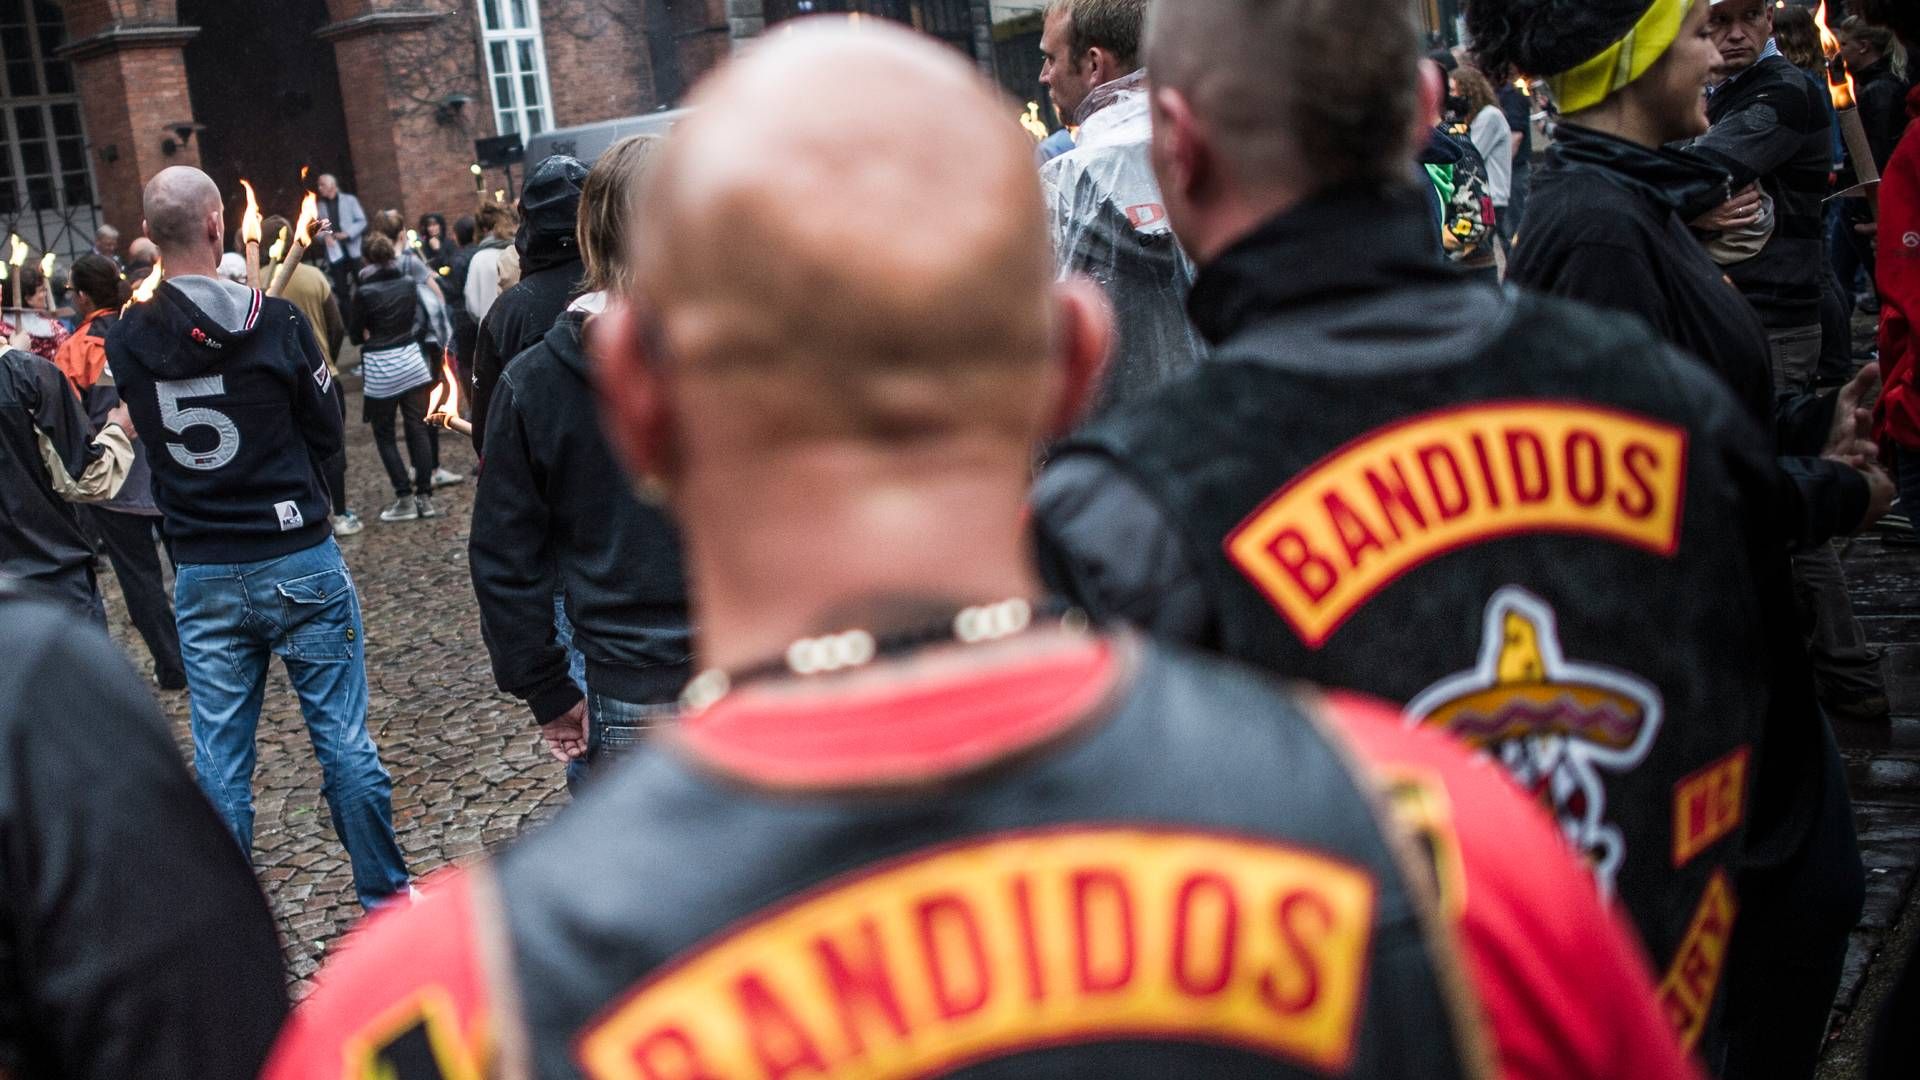 Myndighederne indleder en sag ved domstolene om at forbyde rockergruppen Bandidos. | Foto: Hansen Michael